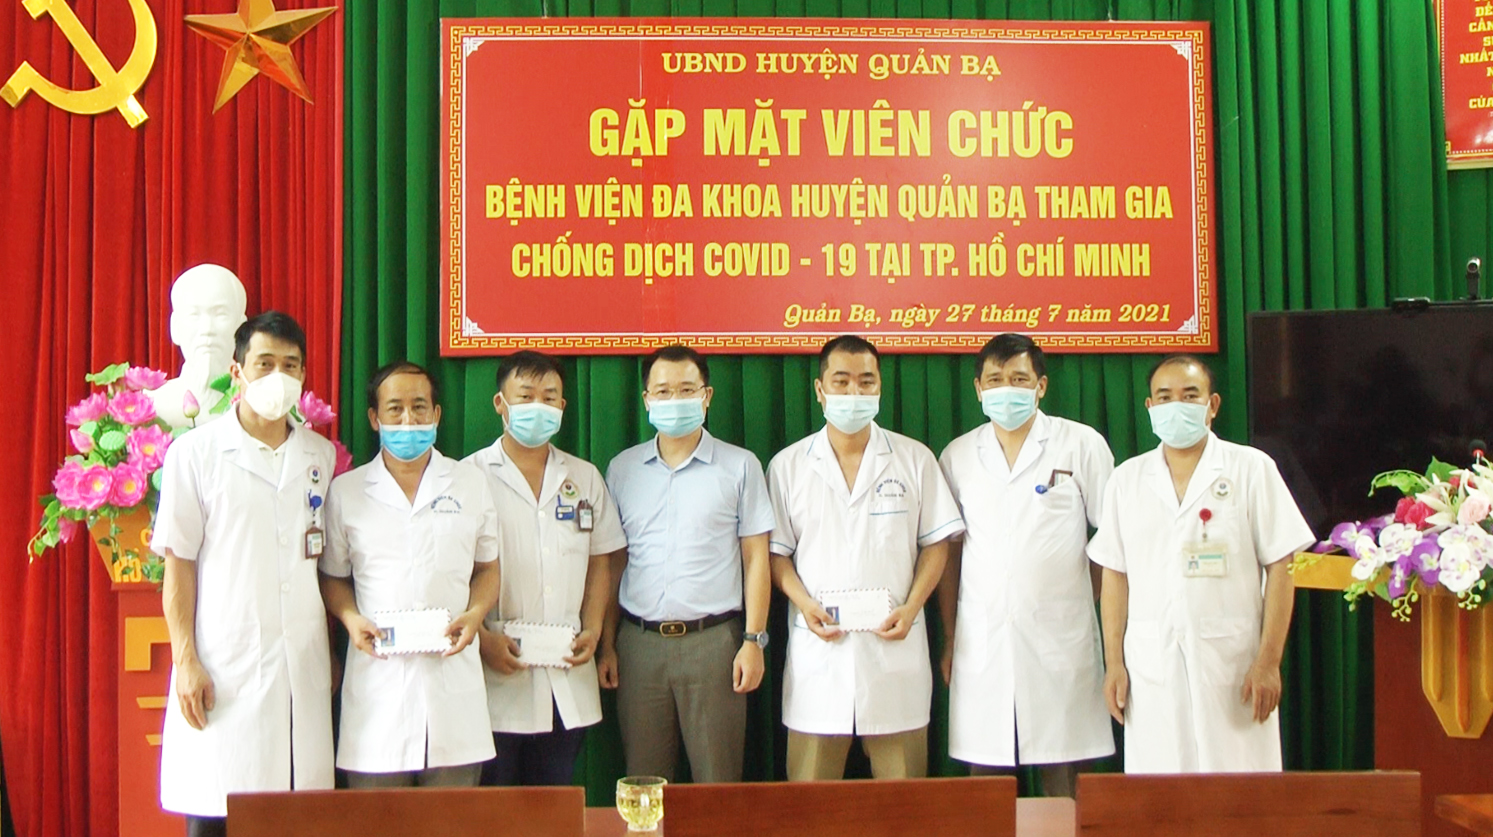 Quản Bạ: Gặp mặt cán bộ, y bác sỹ tham gia chống dịch Covid- 19 tại TP Hồ Chí Minh.